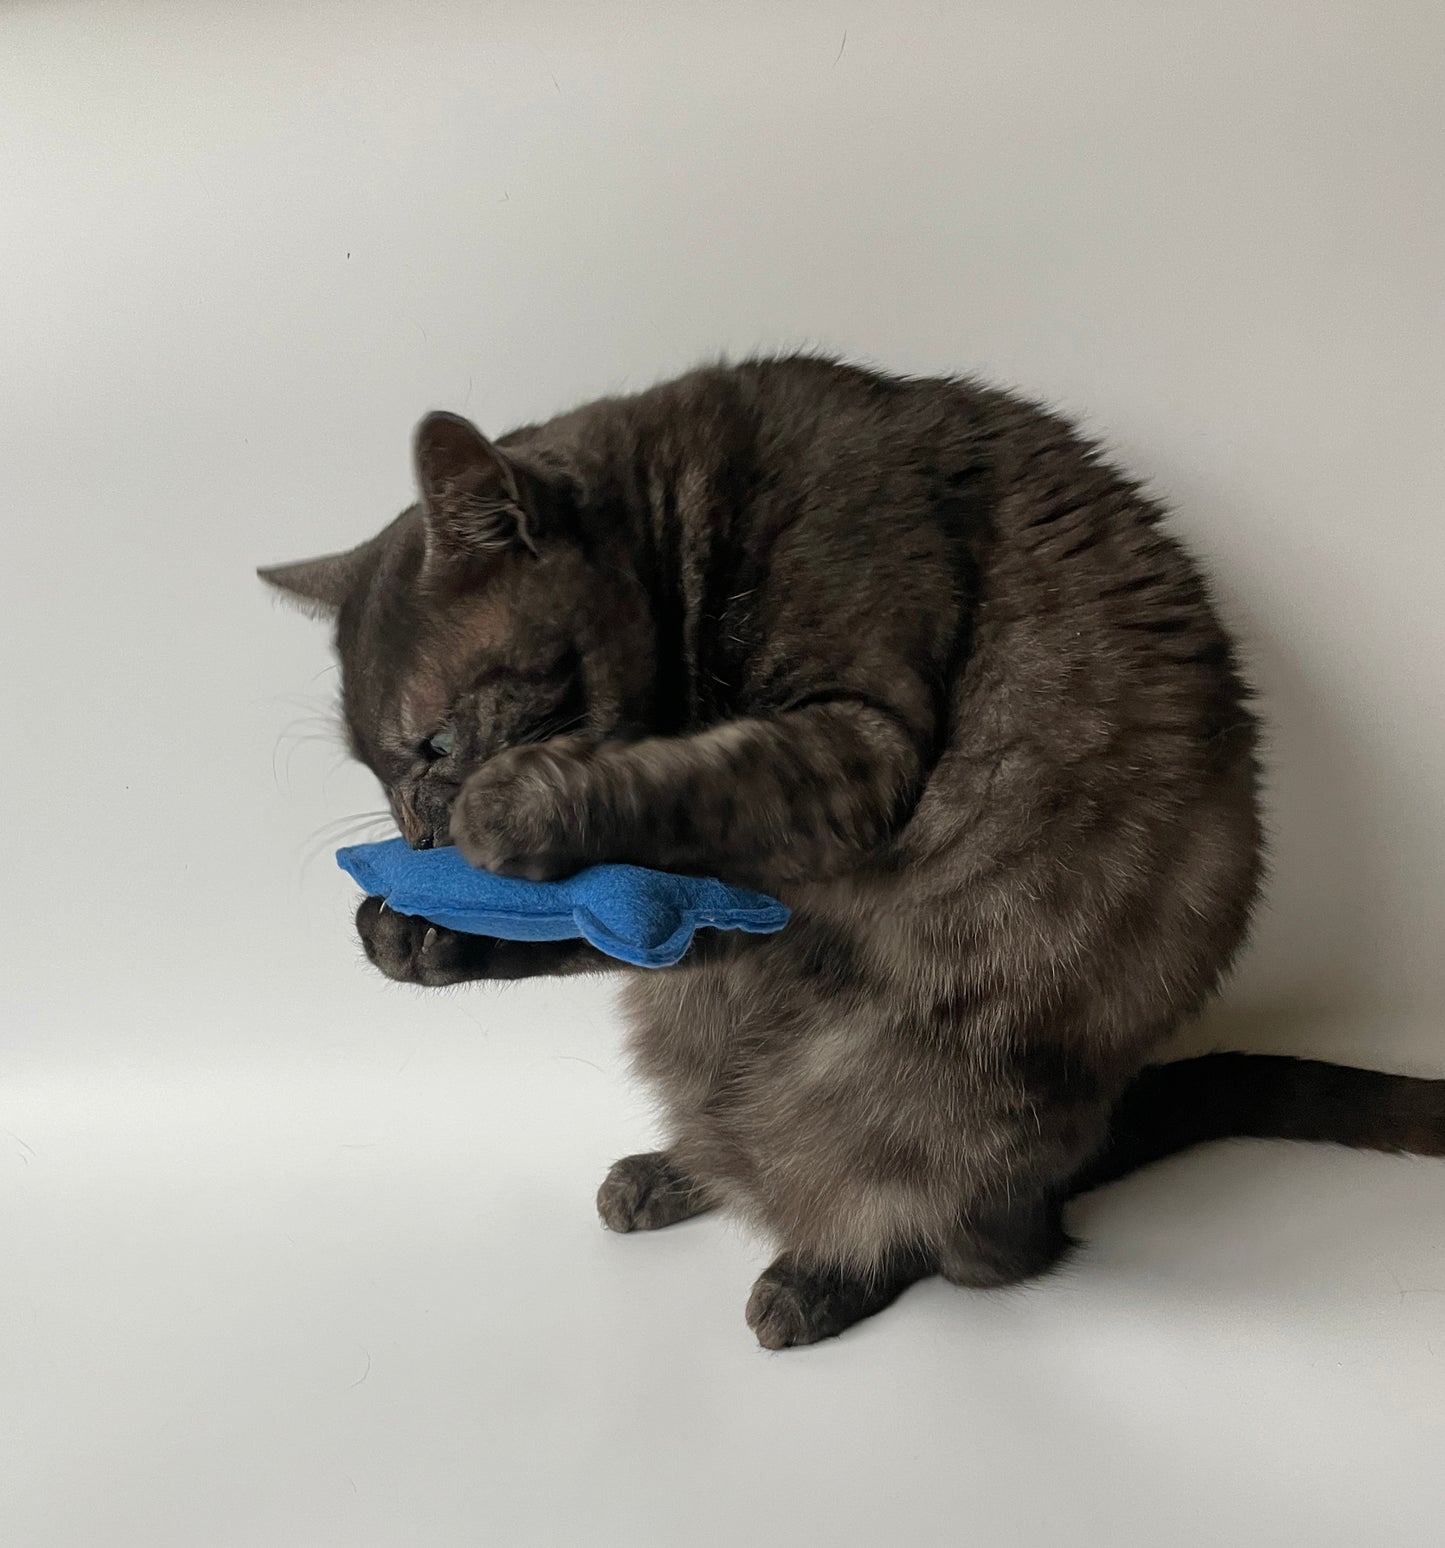 Cat biting cat fish toy